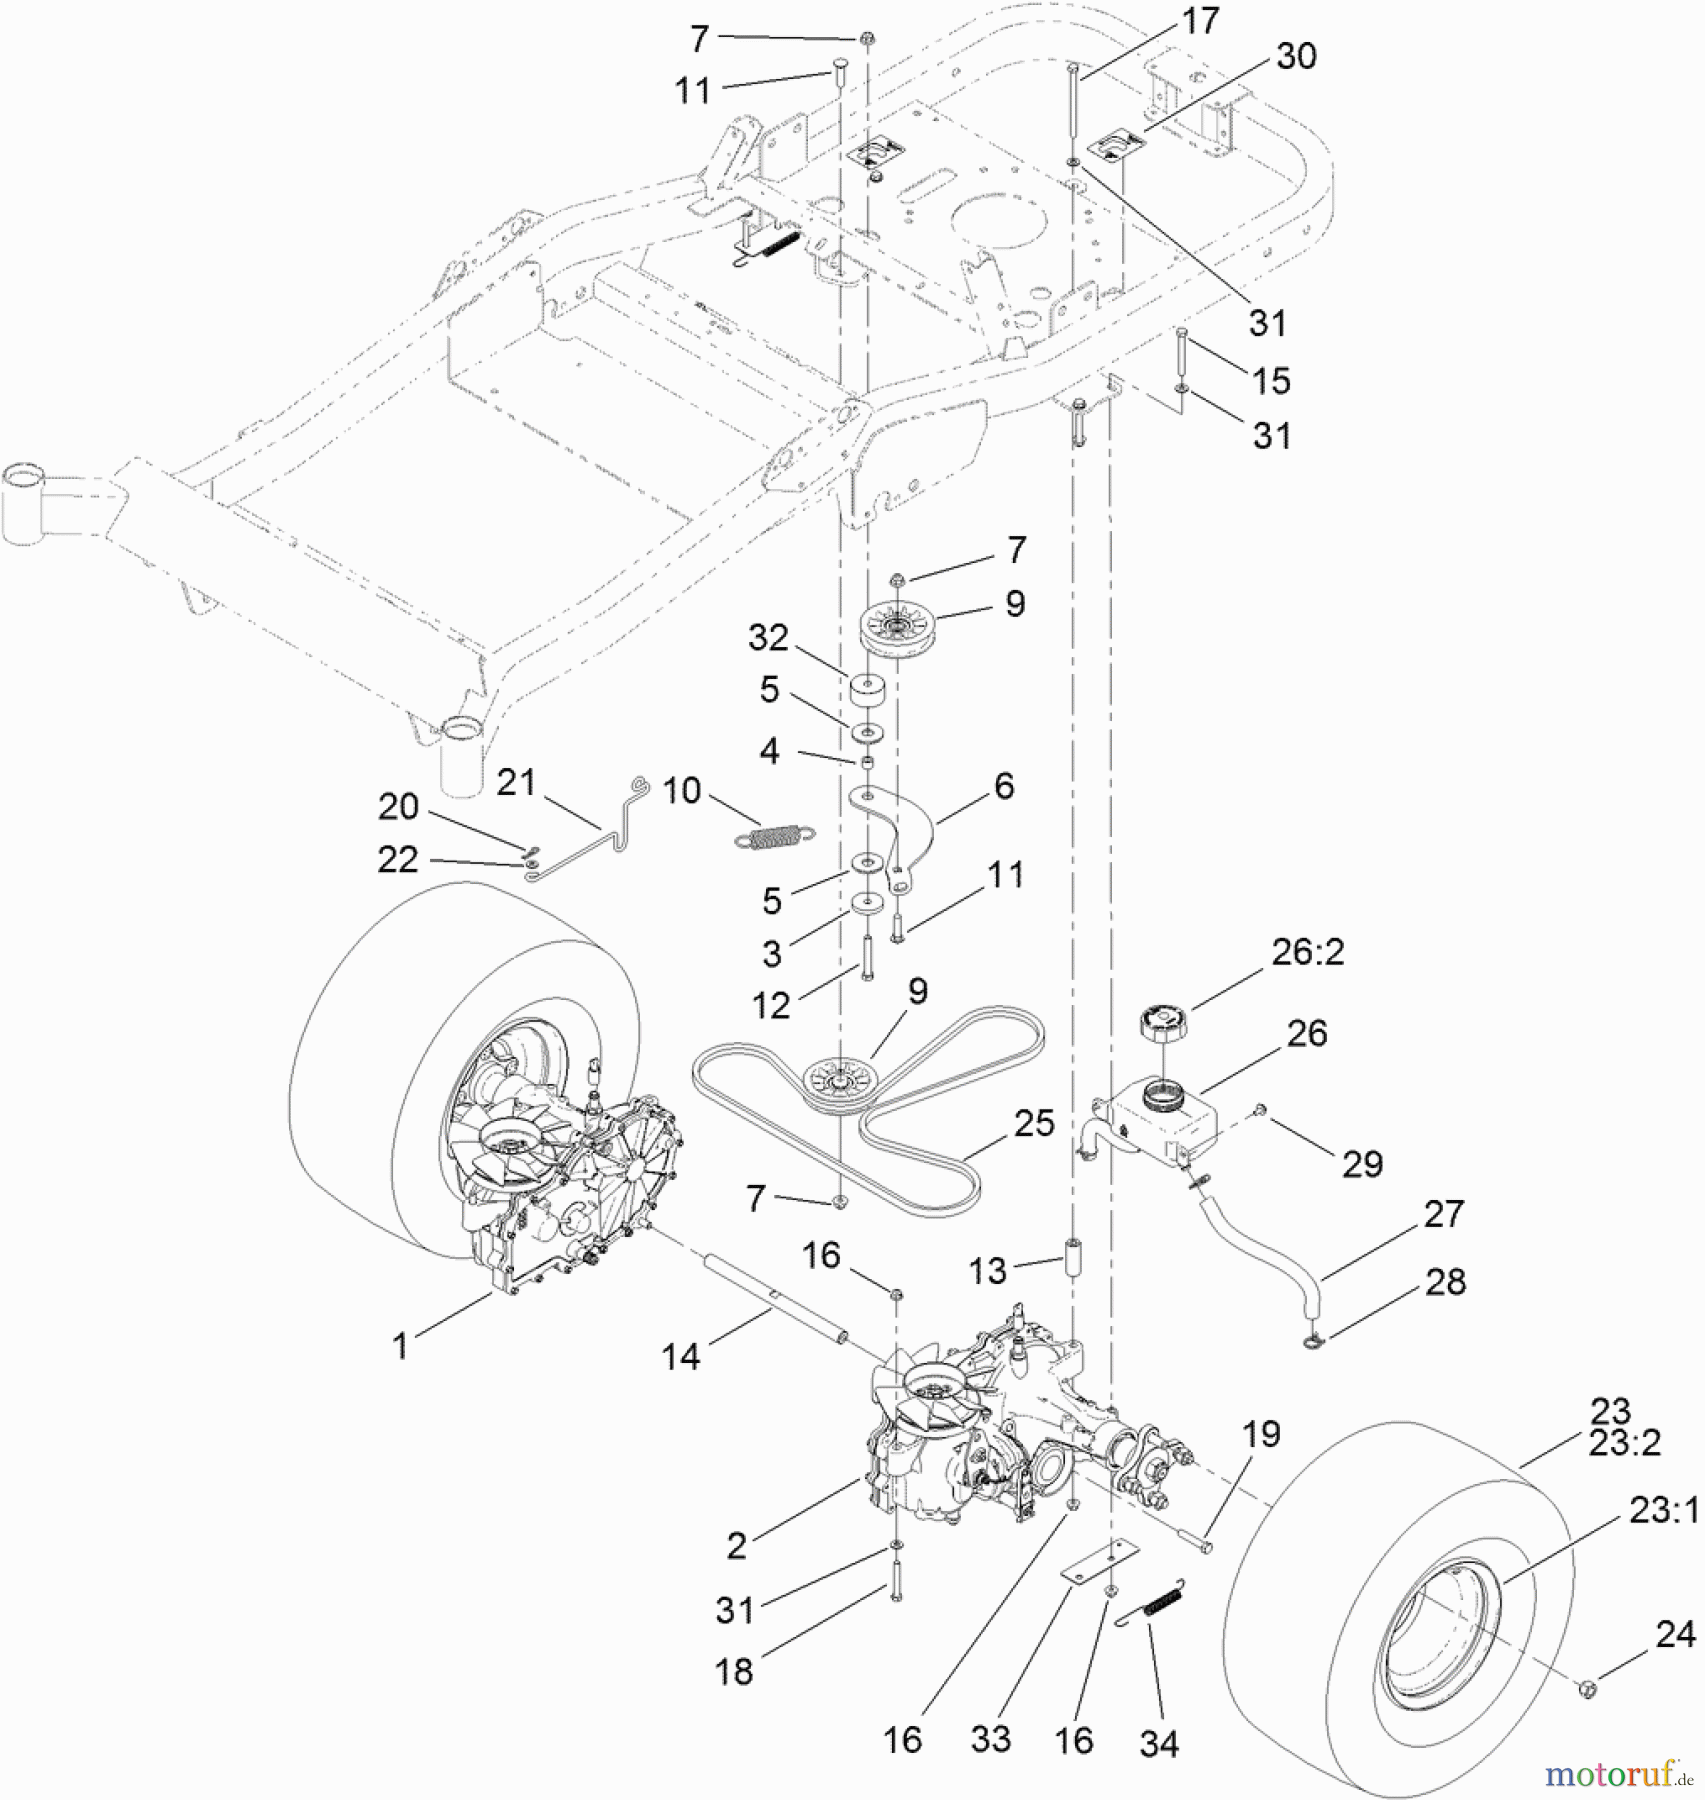  Toro Neu Mowers, Zero-Turn 74840 (ZX5020) - Toro TITAN ZX5020 Zero-Turn-Radius Riding Mower, 2011 (311000001-311999999) TRACTION DRIVE ASSEMBLY